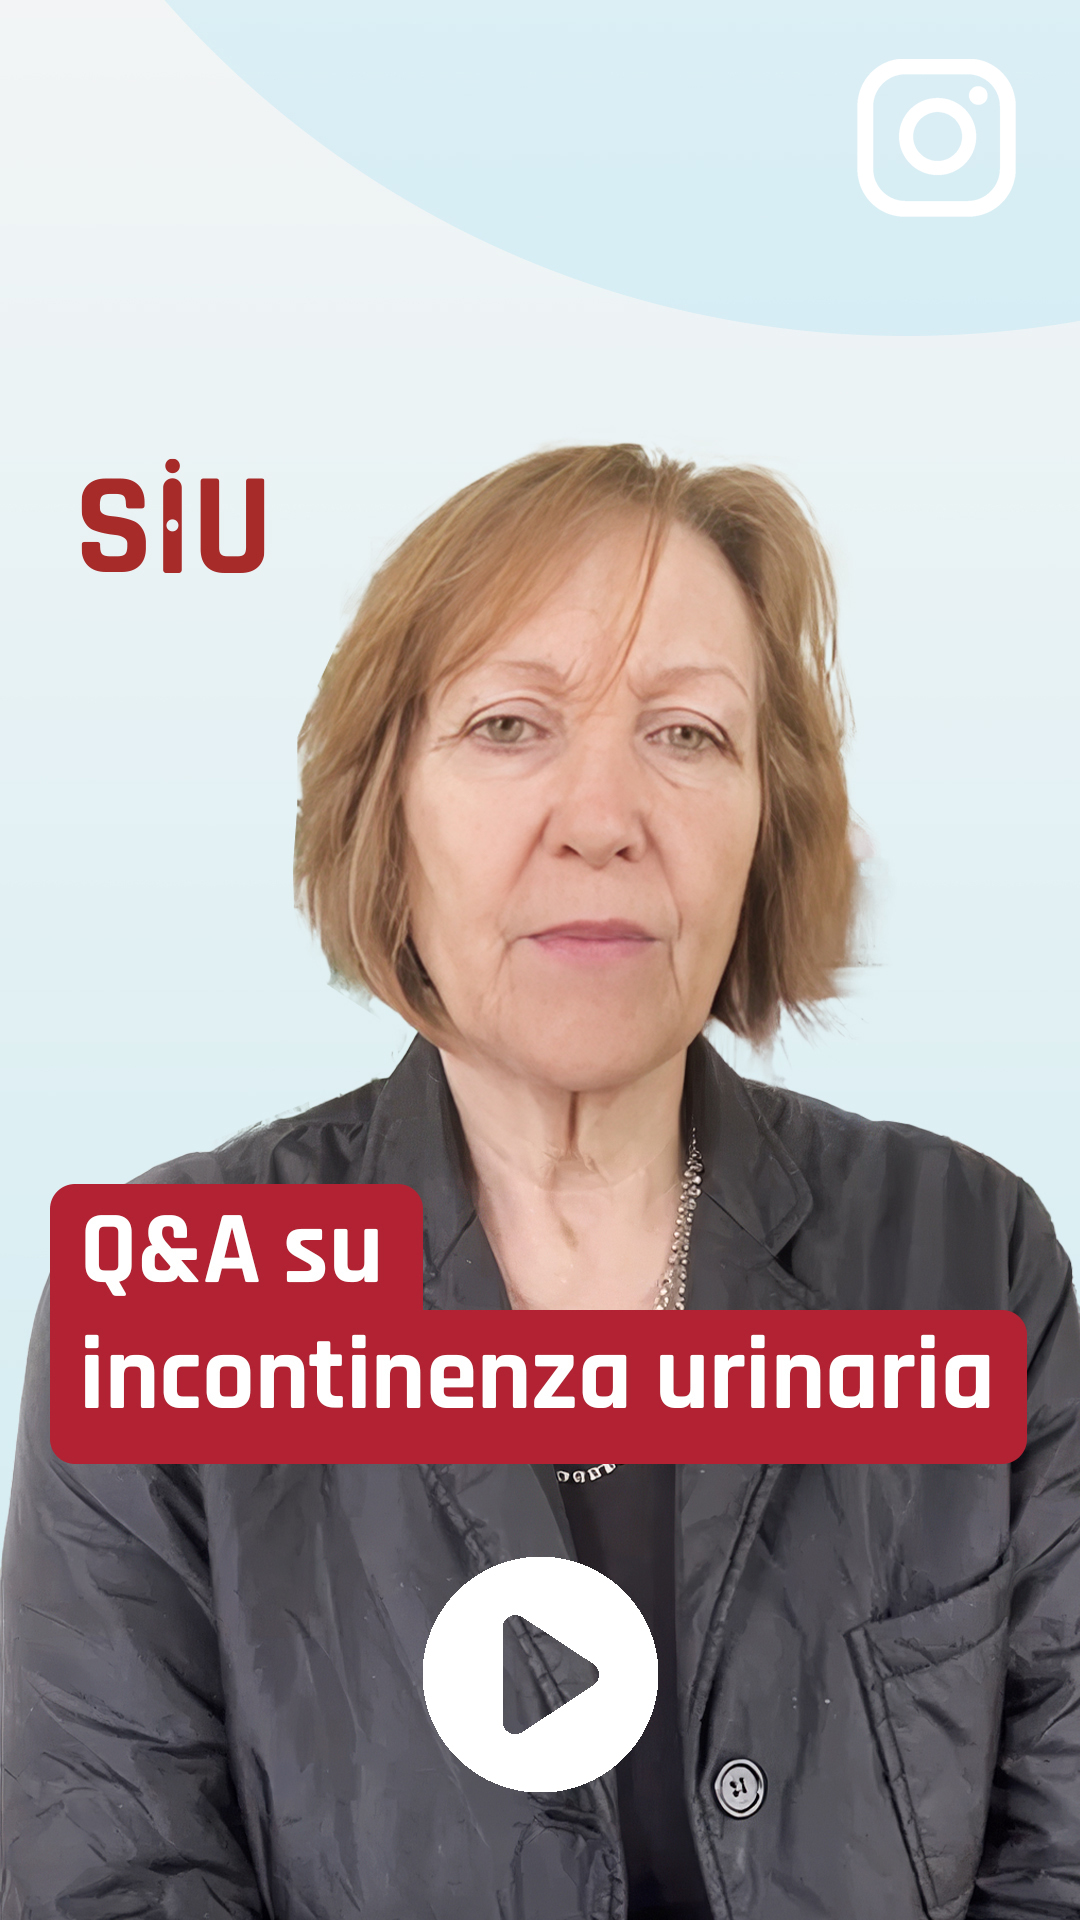 Q&A su incontinenza urinaria